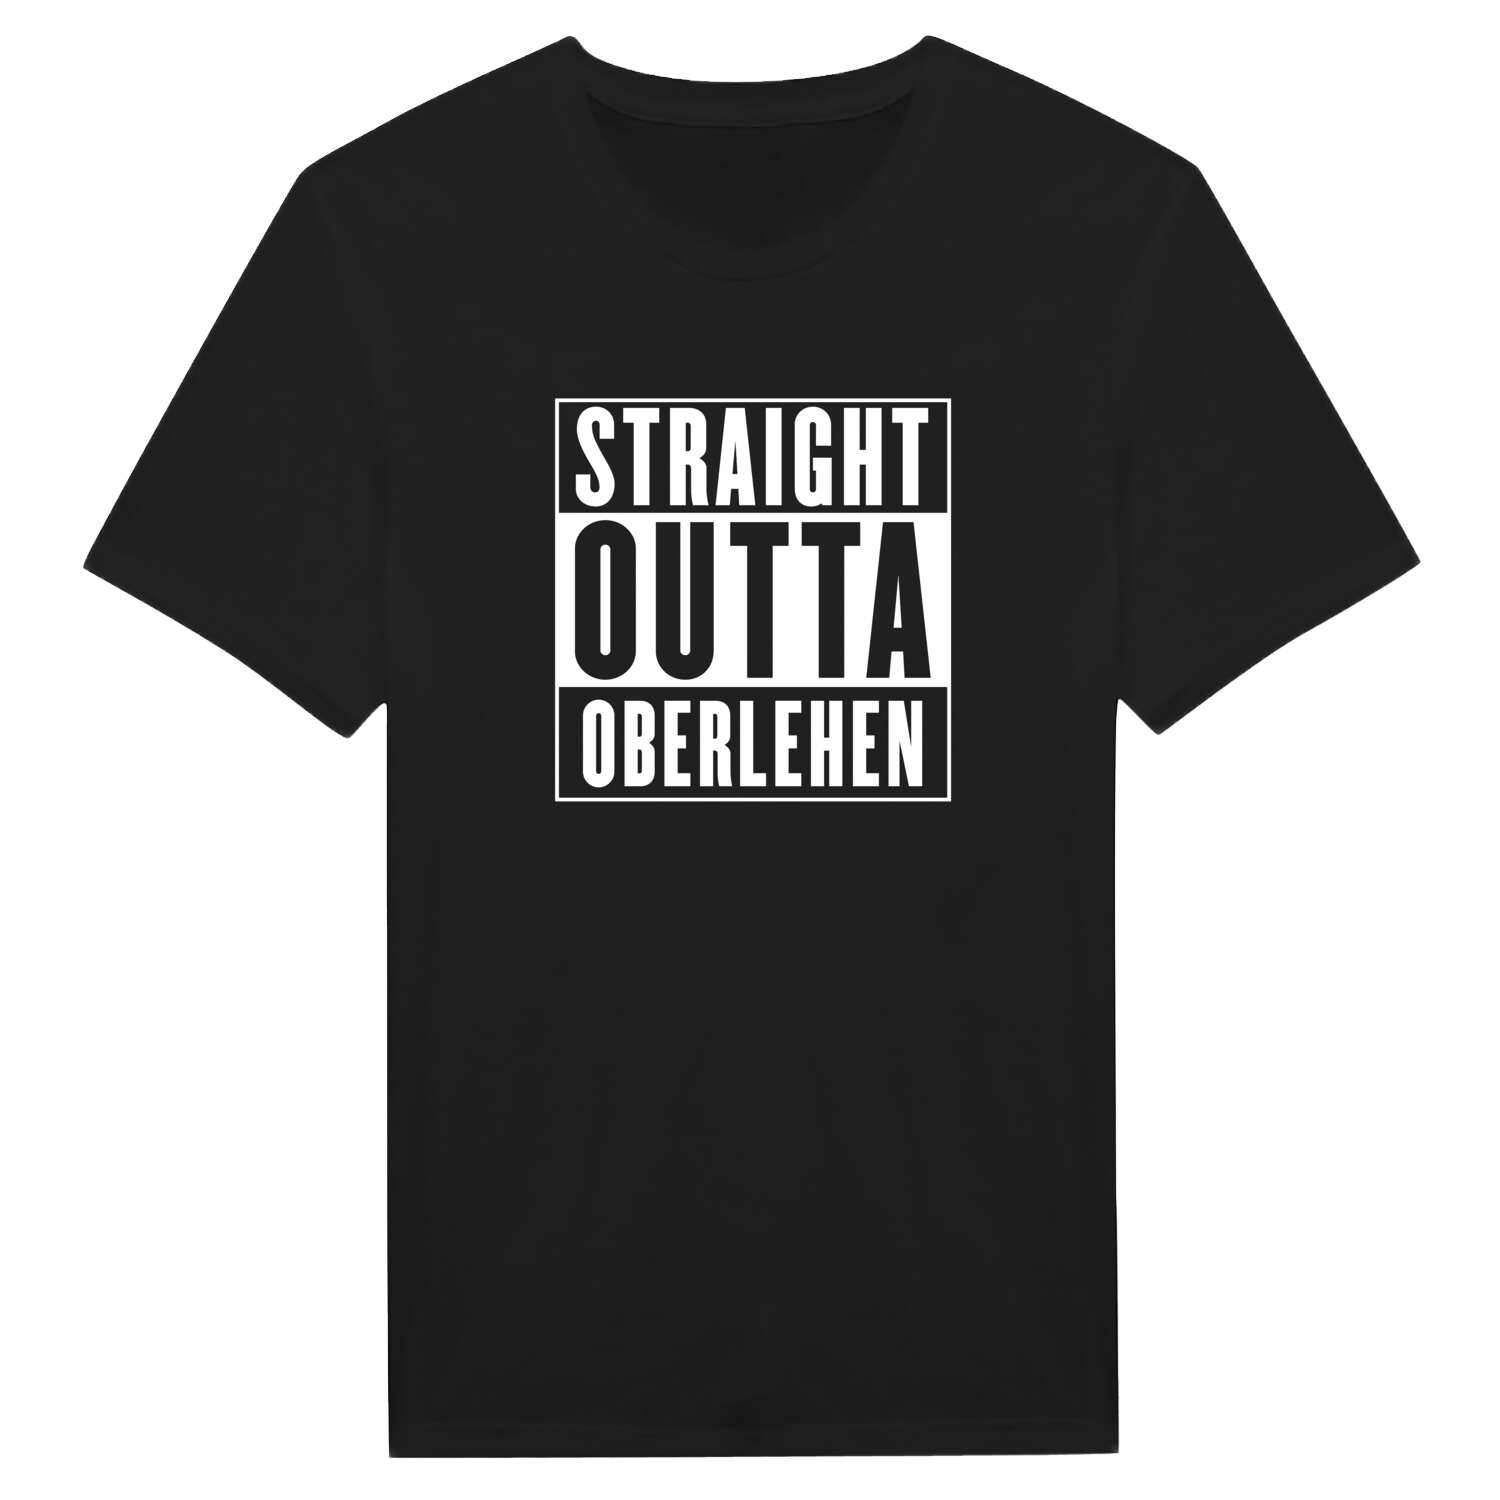 Oberlehen T-Shirt »Straight Outta«